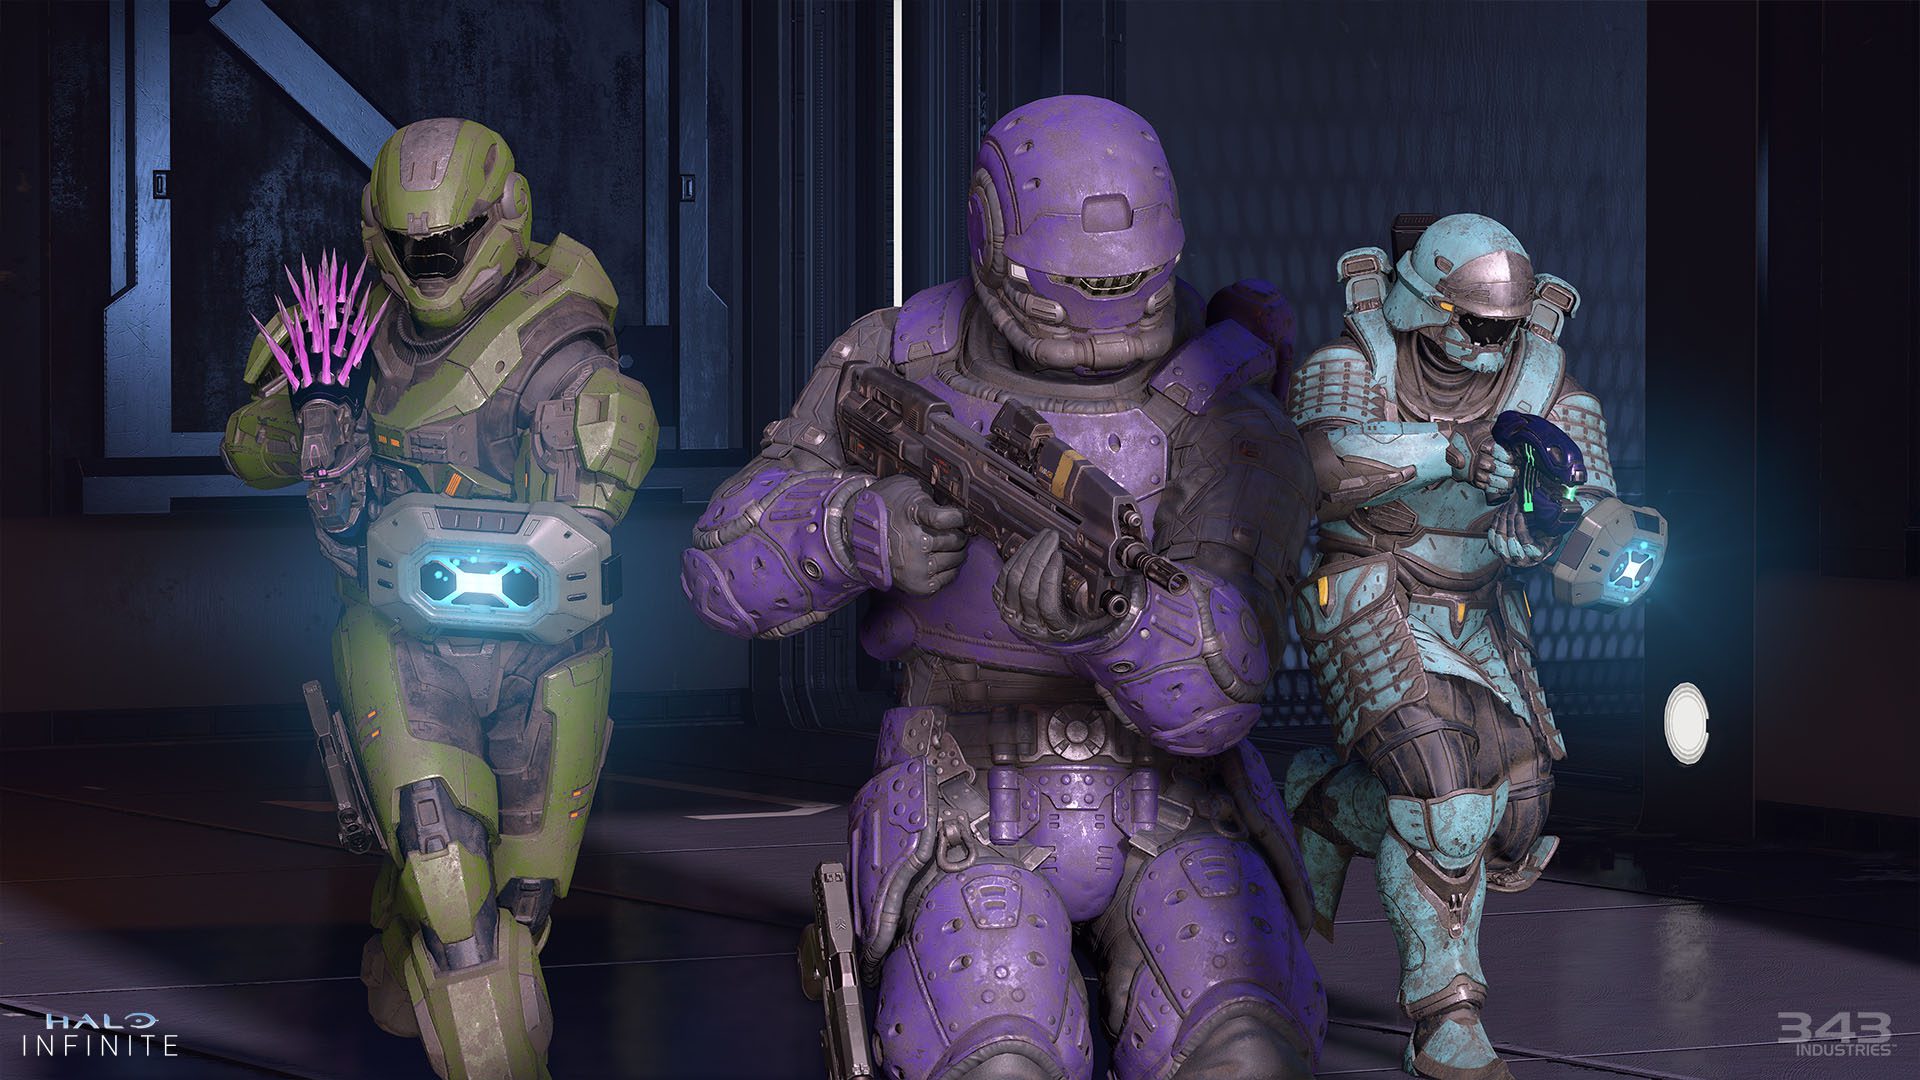 Zrzut ekranu z Halo Infinite pokazuje spartański wielordzeniowy pancerz z powłokami kadetów